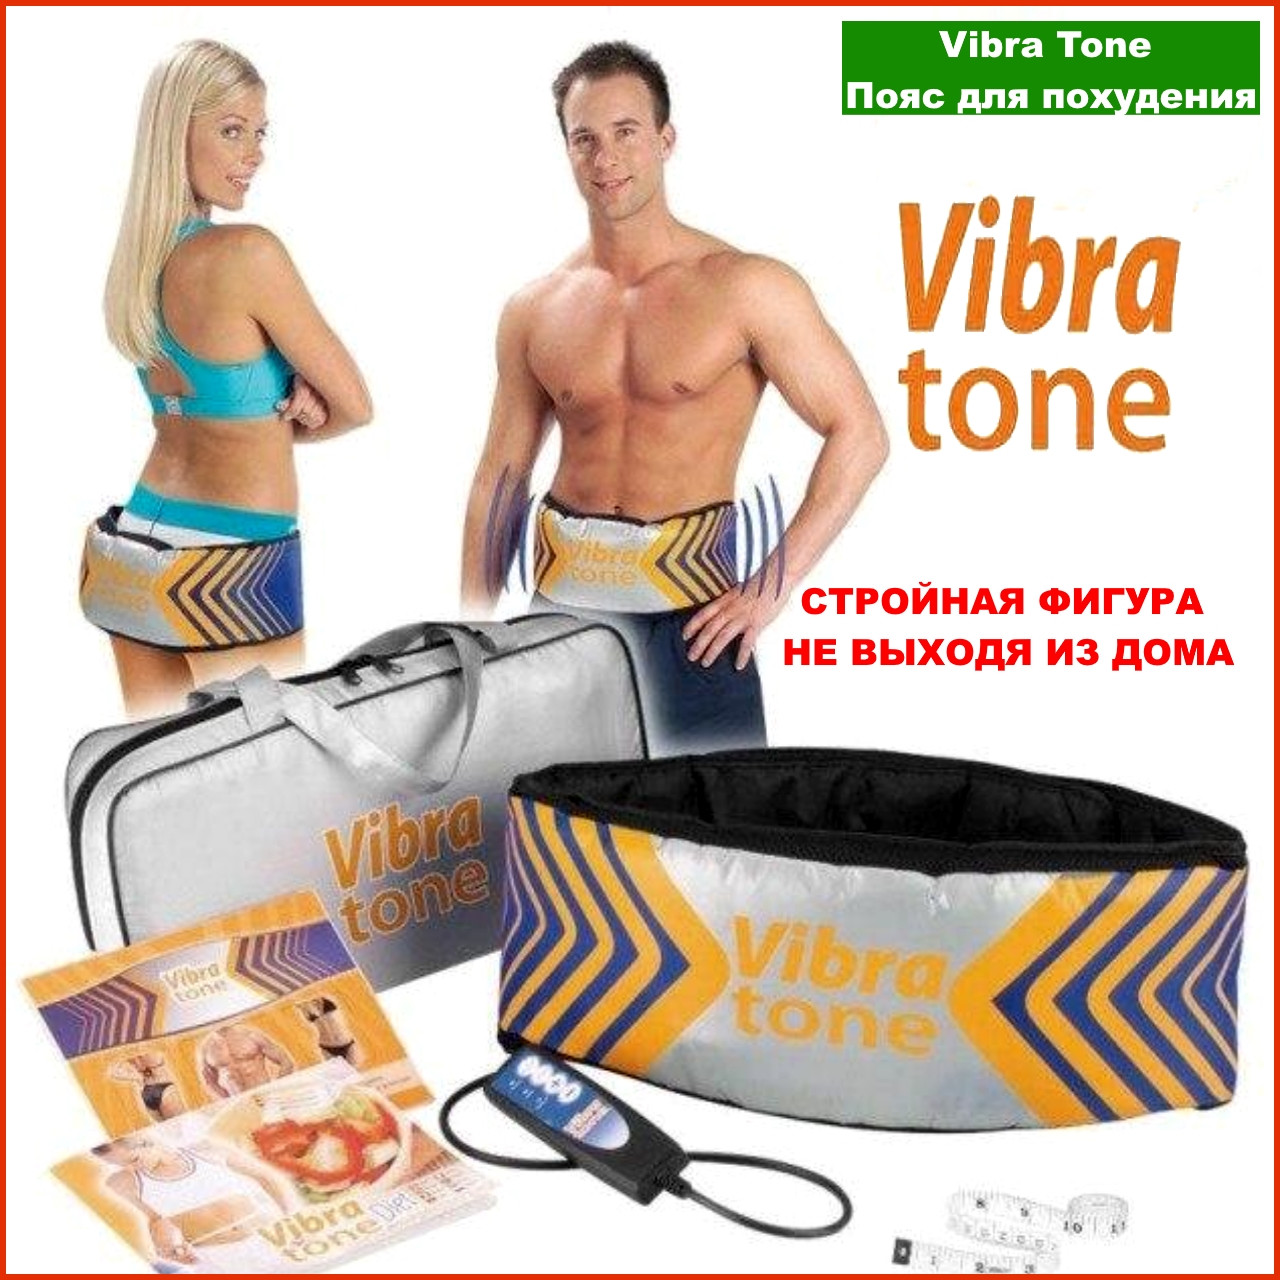 Vibra Tone пояс для похудения отзывы. Vibra Tone пояс для похудения инструкция по применению. Вибратон помогает убрать живот отзывы. Vibra tone пояс